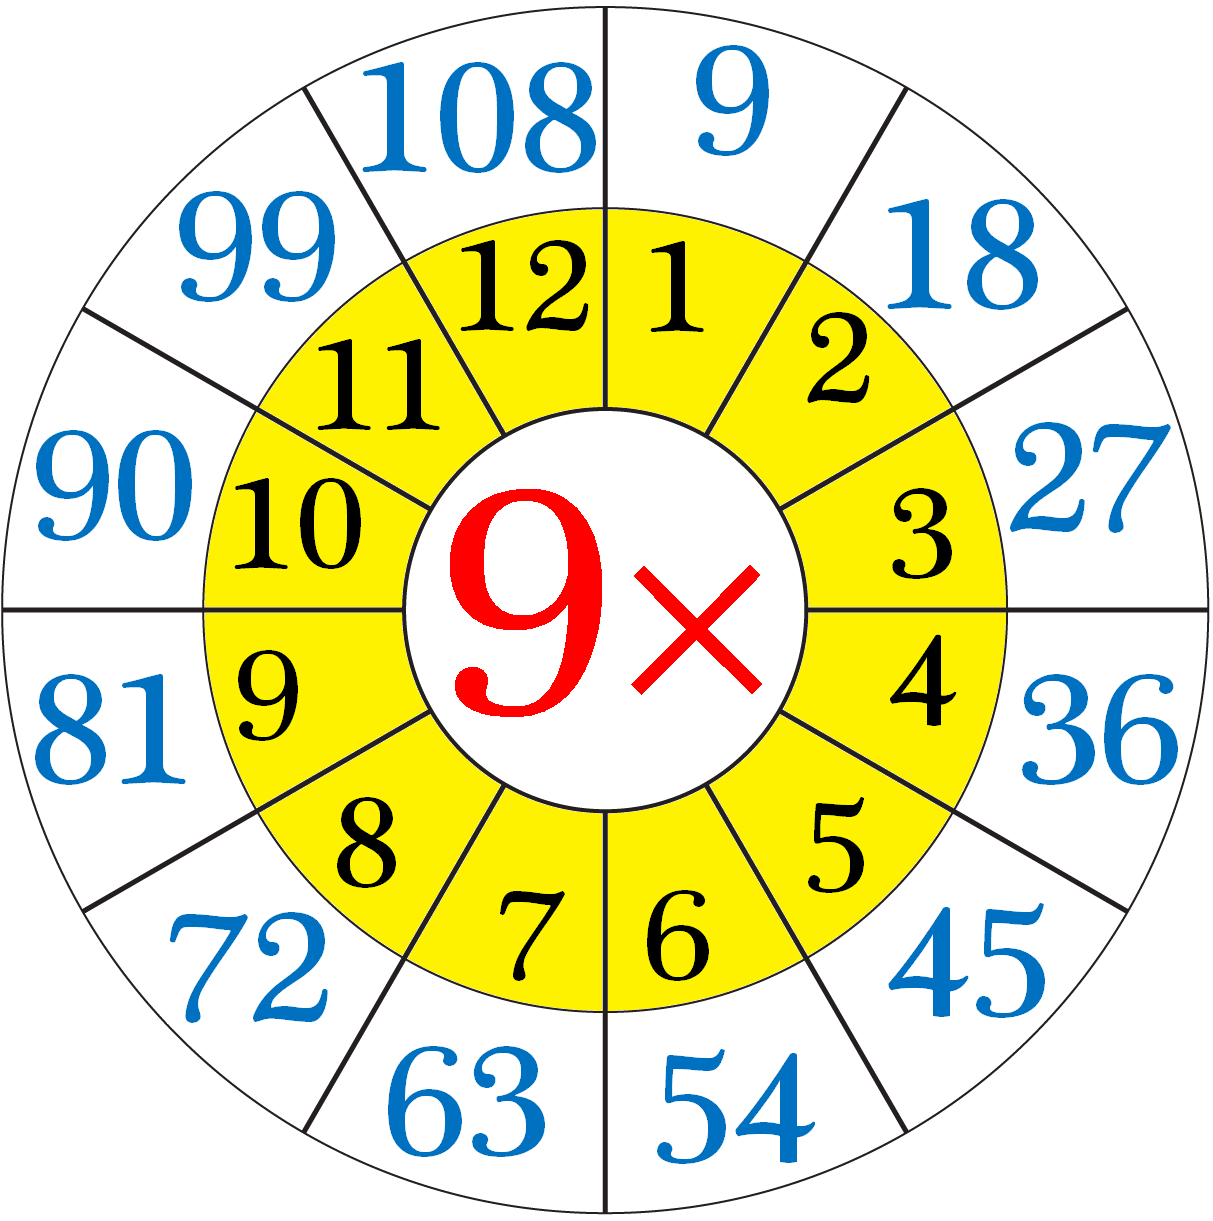 Multiplication Table of Nine